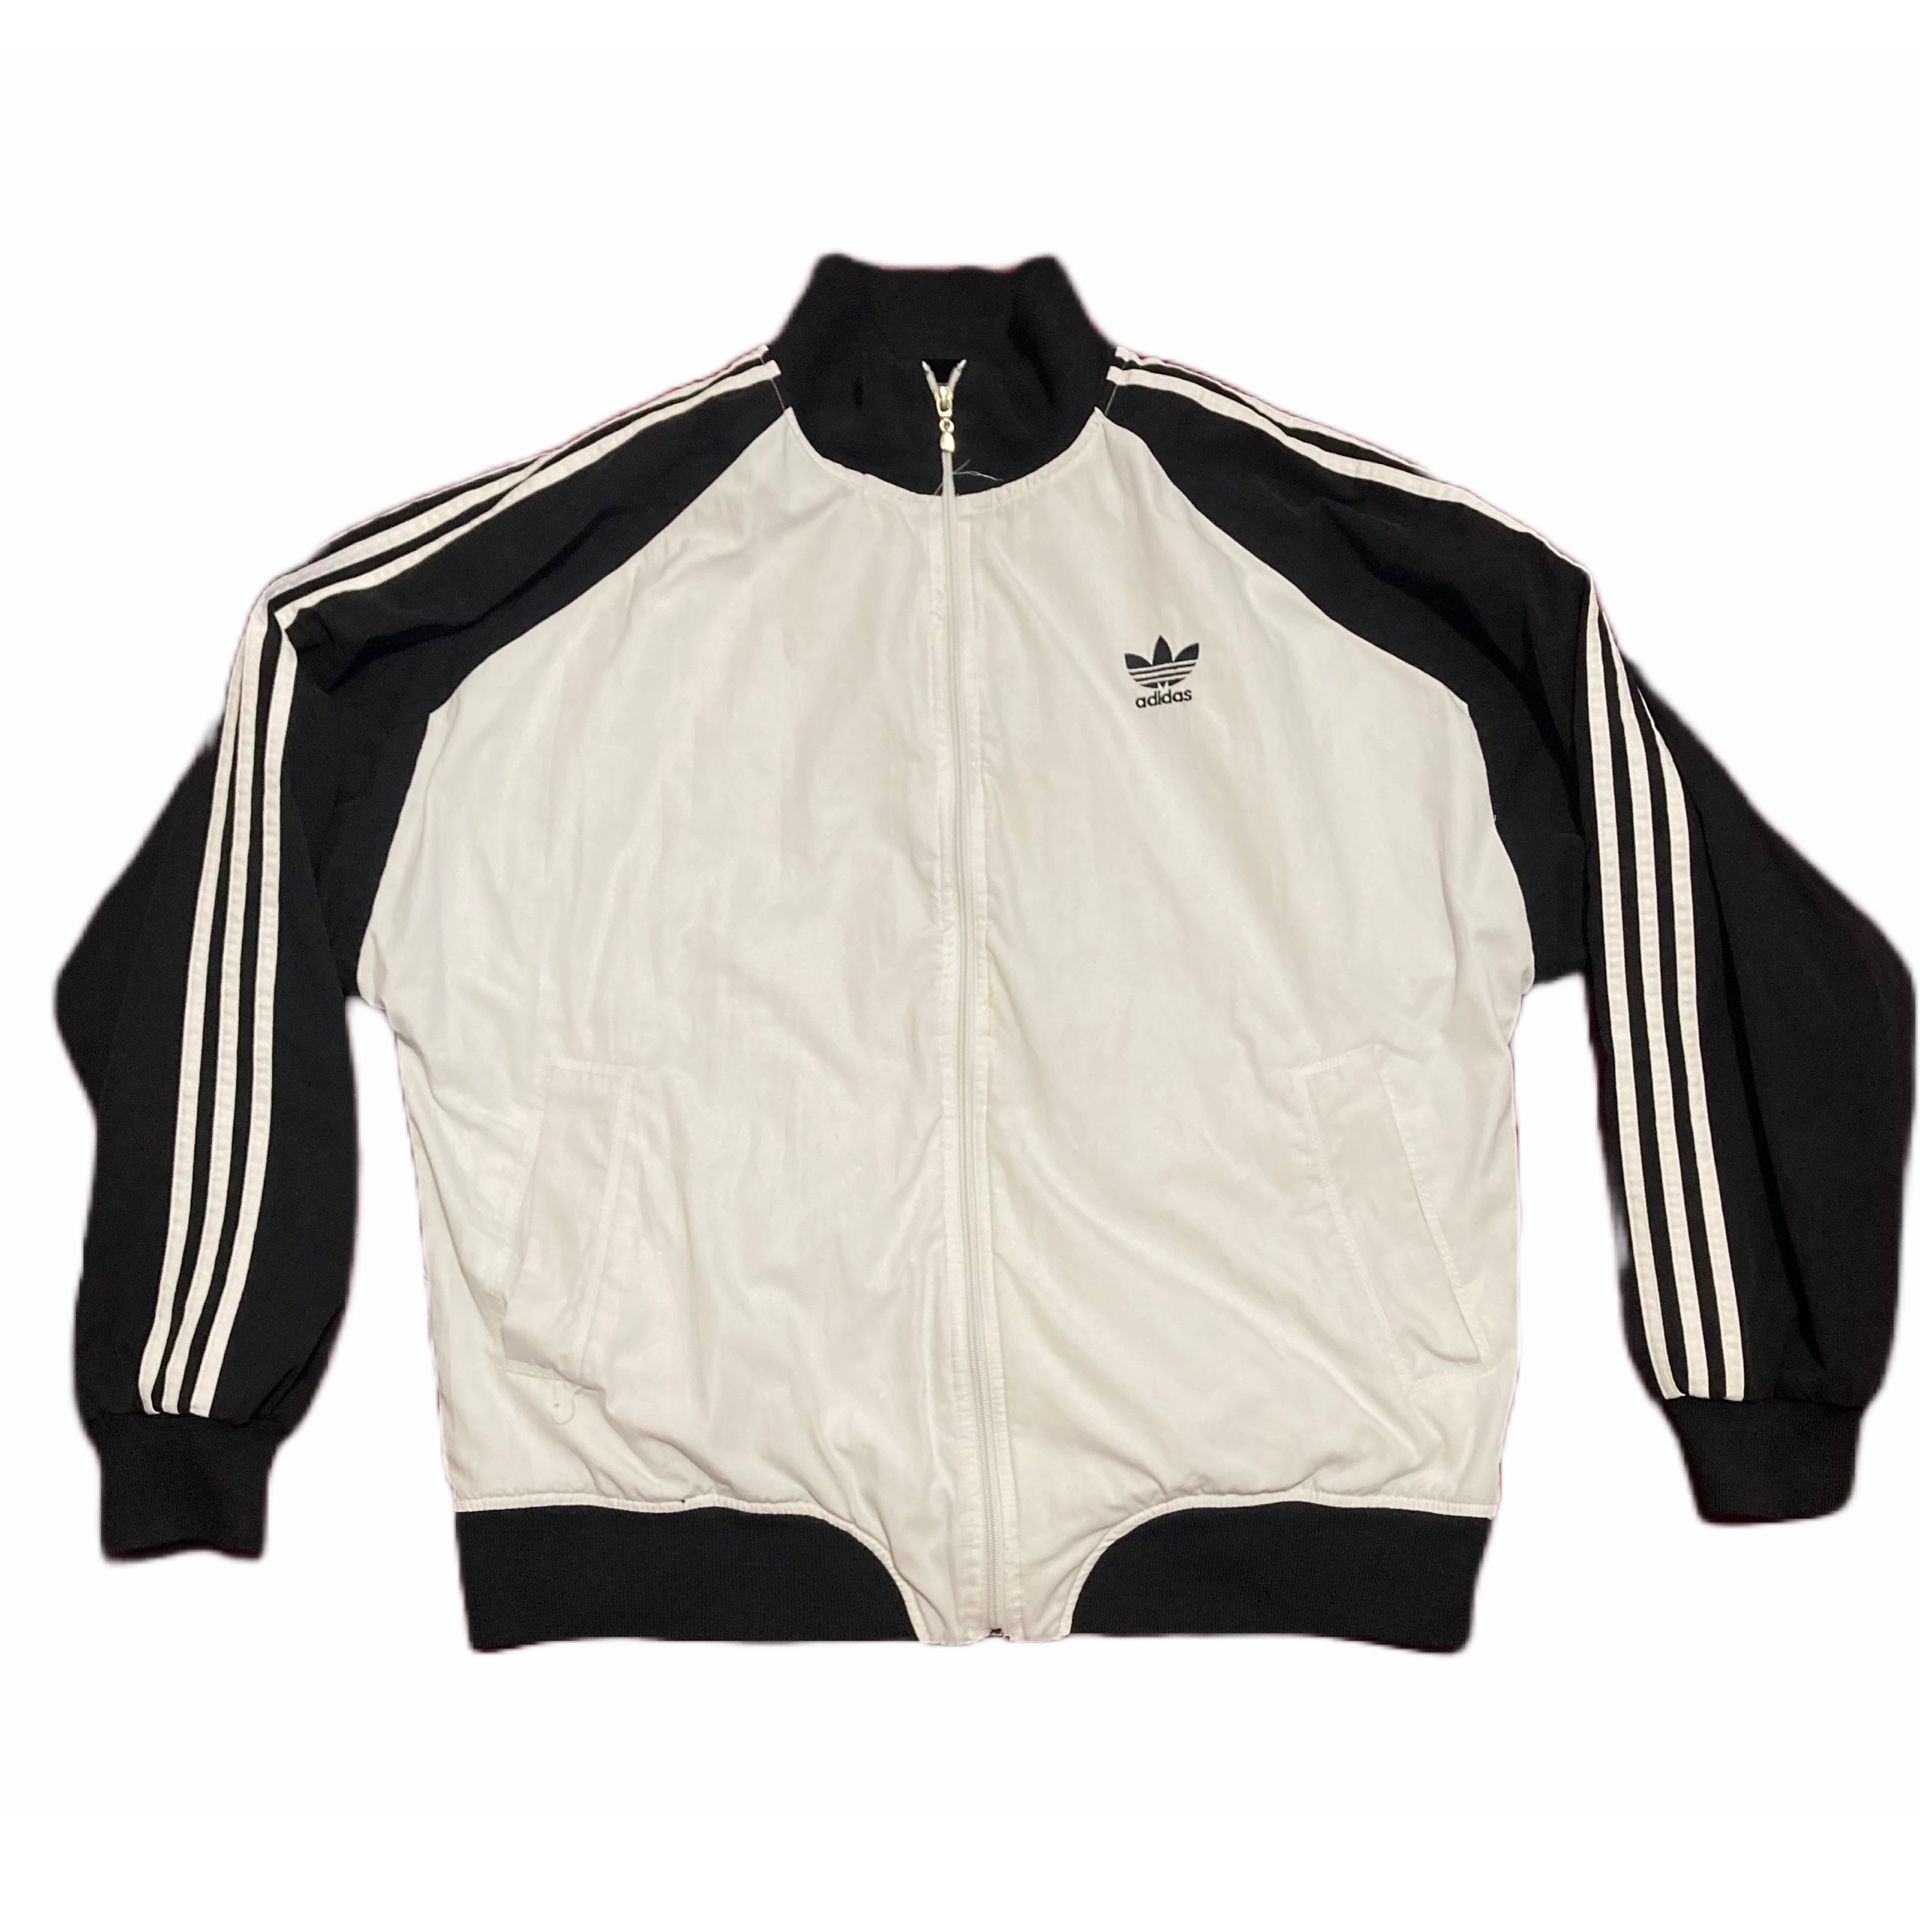 Vintage Originals ATP Mens L Old School Track Jacket 90s Full Zip White for Sale in Sunnyside, - OfferUp